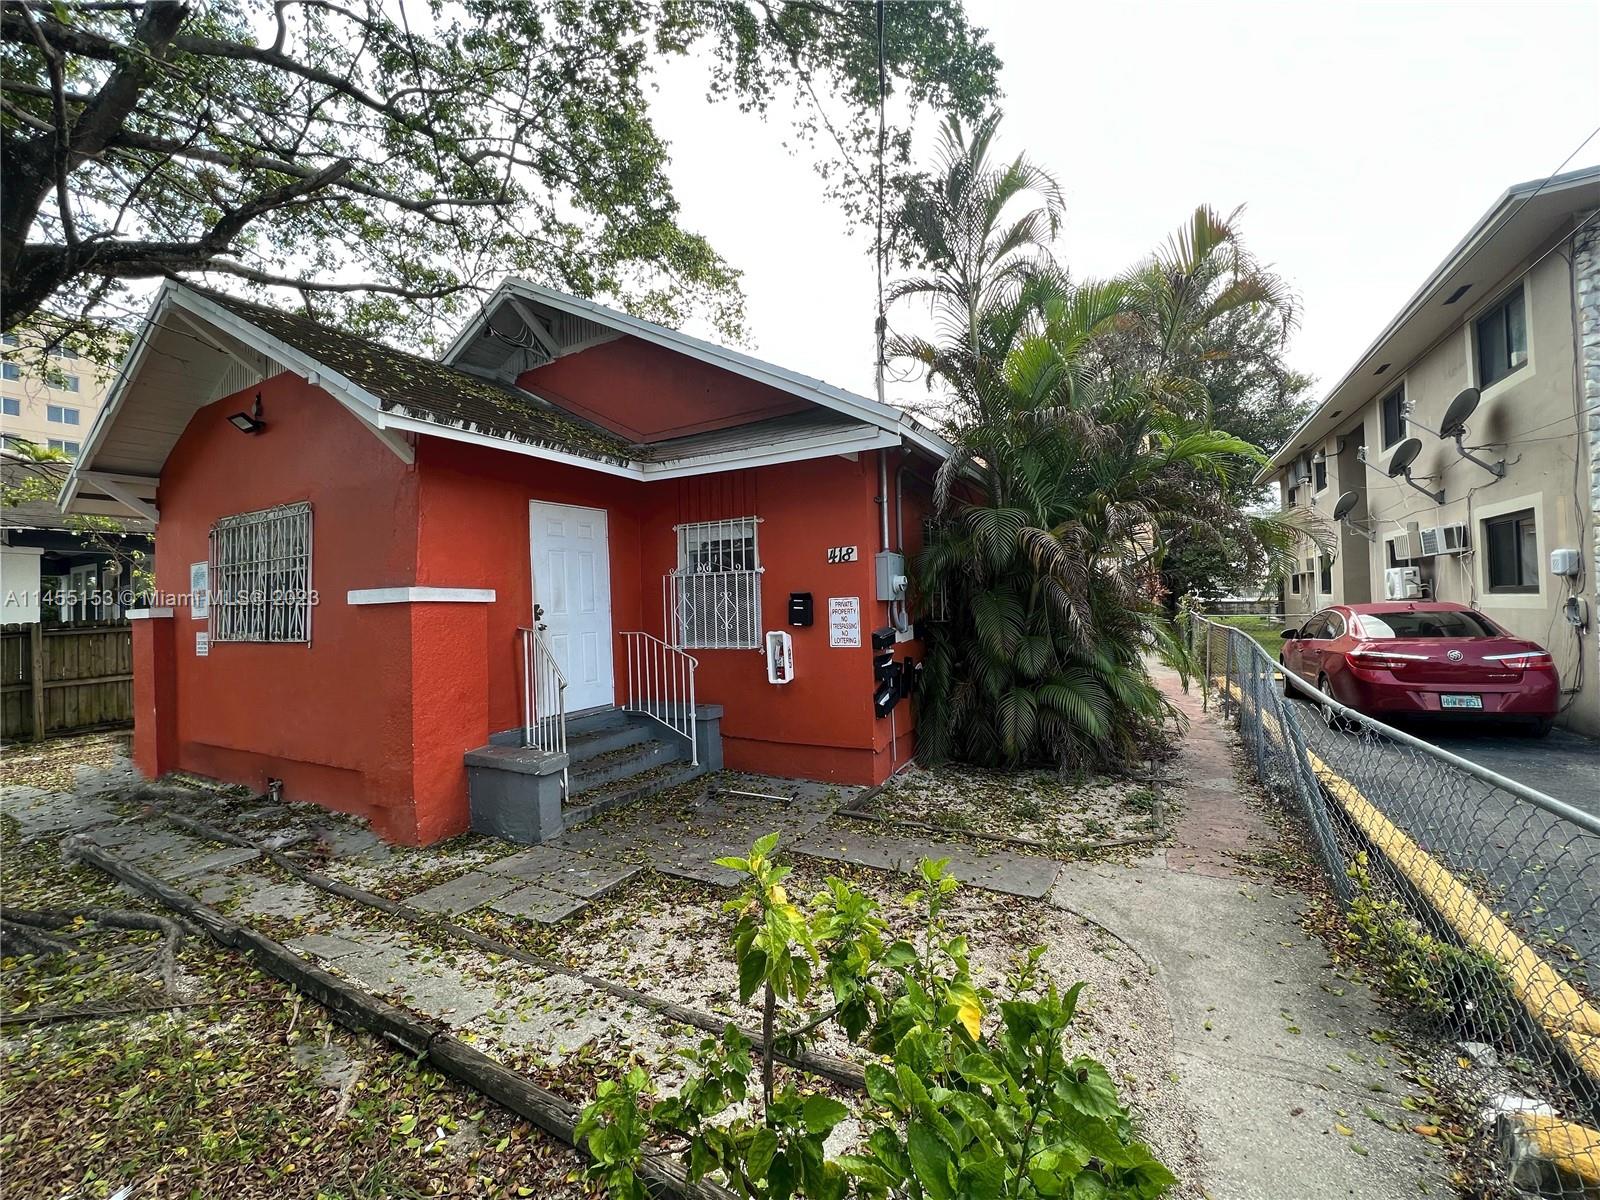 Rental Property at 418 Nw 9th Ave, Miami, Broward County, Florida -  - $1,700,000 MO.